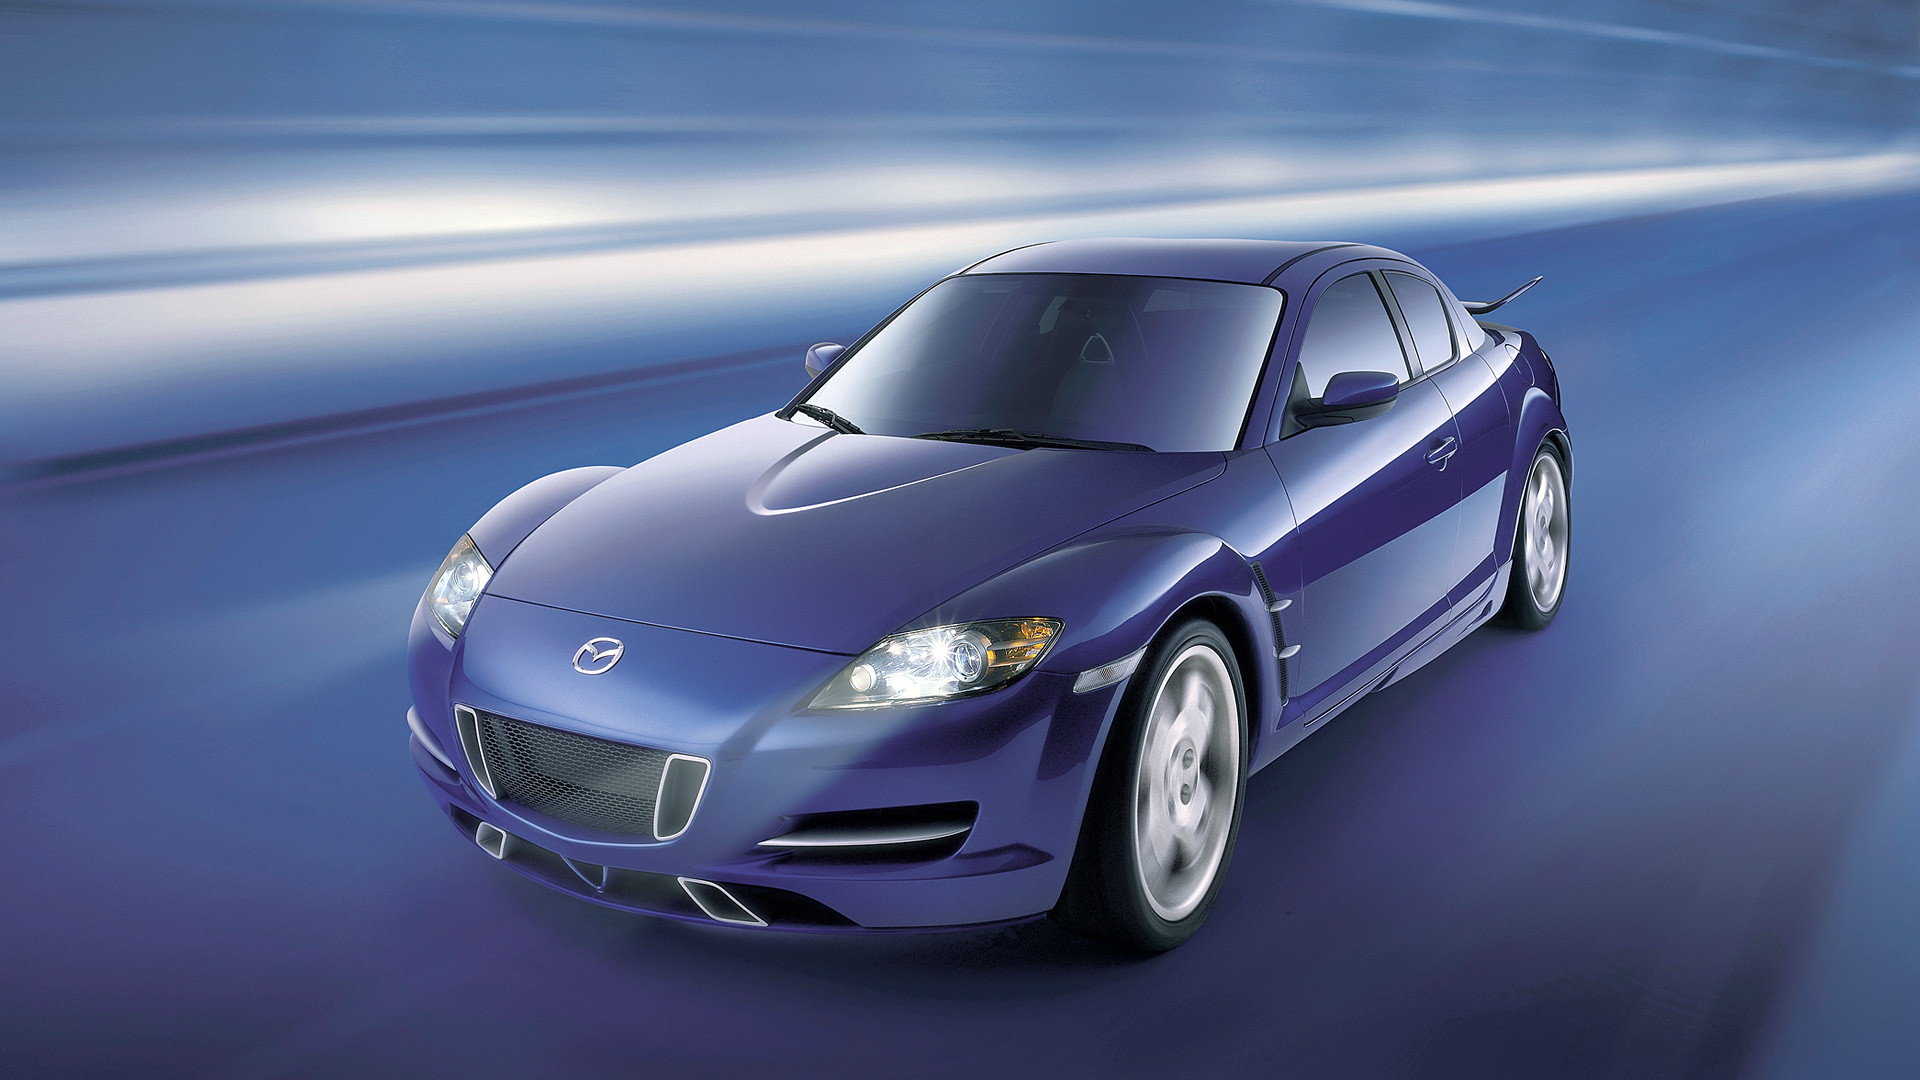  2003 Mazda RX-8 X-Men Wallpaper.